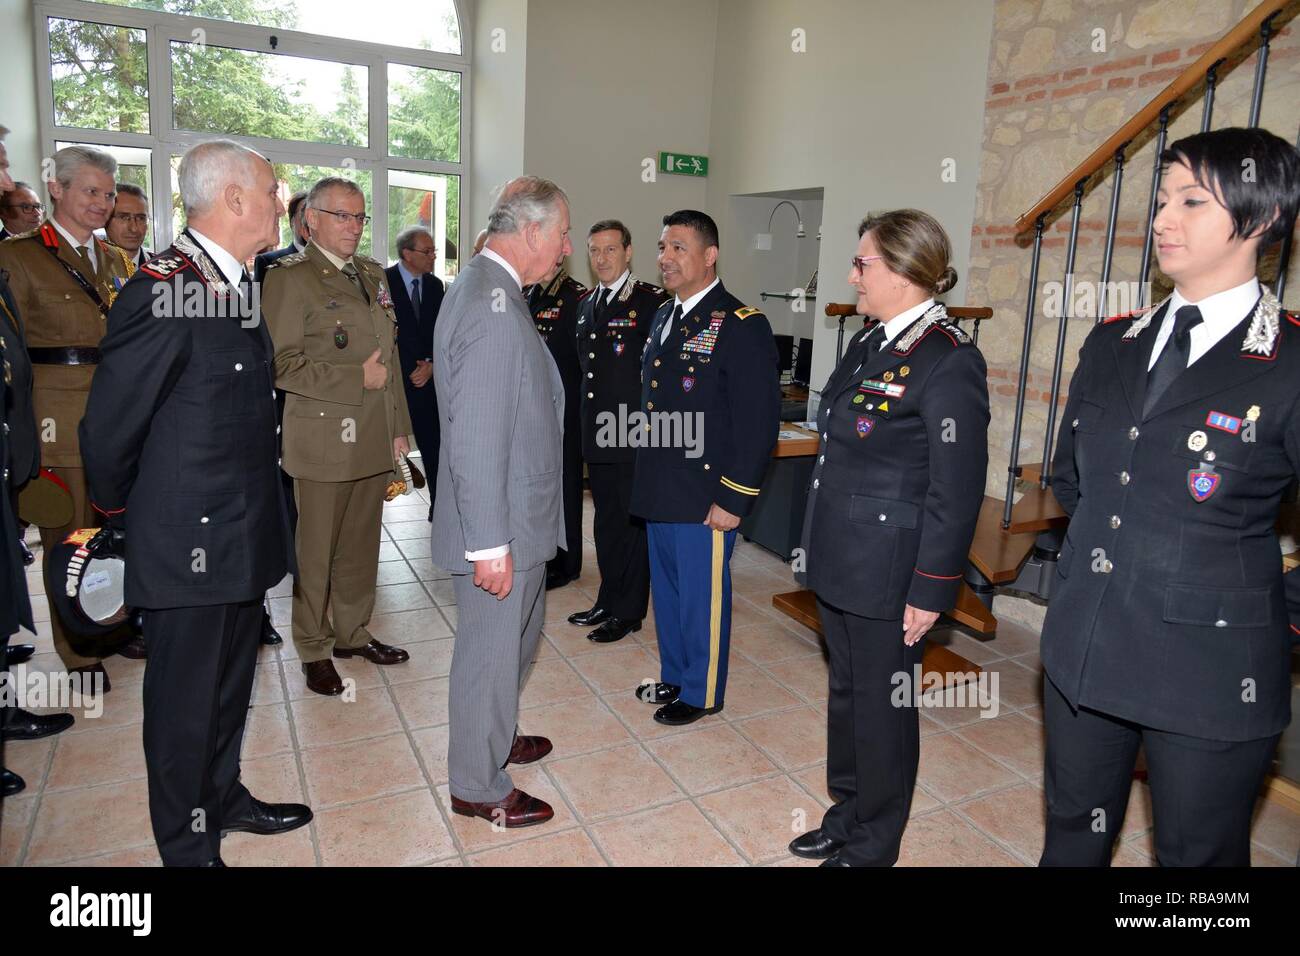 Su Alteza Real, el Príncipe Carlos, Príncipe de Gales, cumple el Coronel del Ejército estadounidense CoESPU Darío S. Gallegos, director adjunto, durante la visita al centro de excelencia para unidades de policía de estabilidad (CoESPU) de Vicenza, Italia, 1 de abril de 2017. Foto de stock